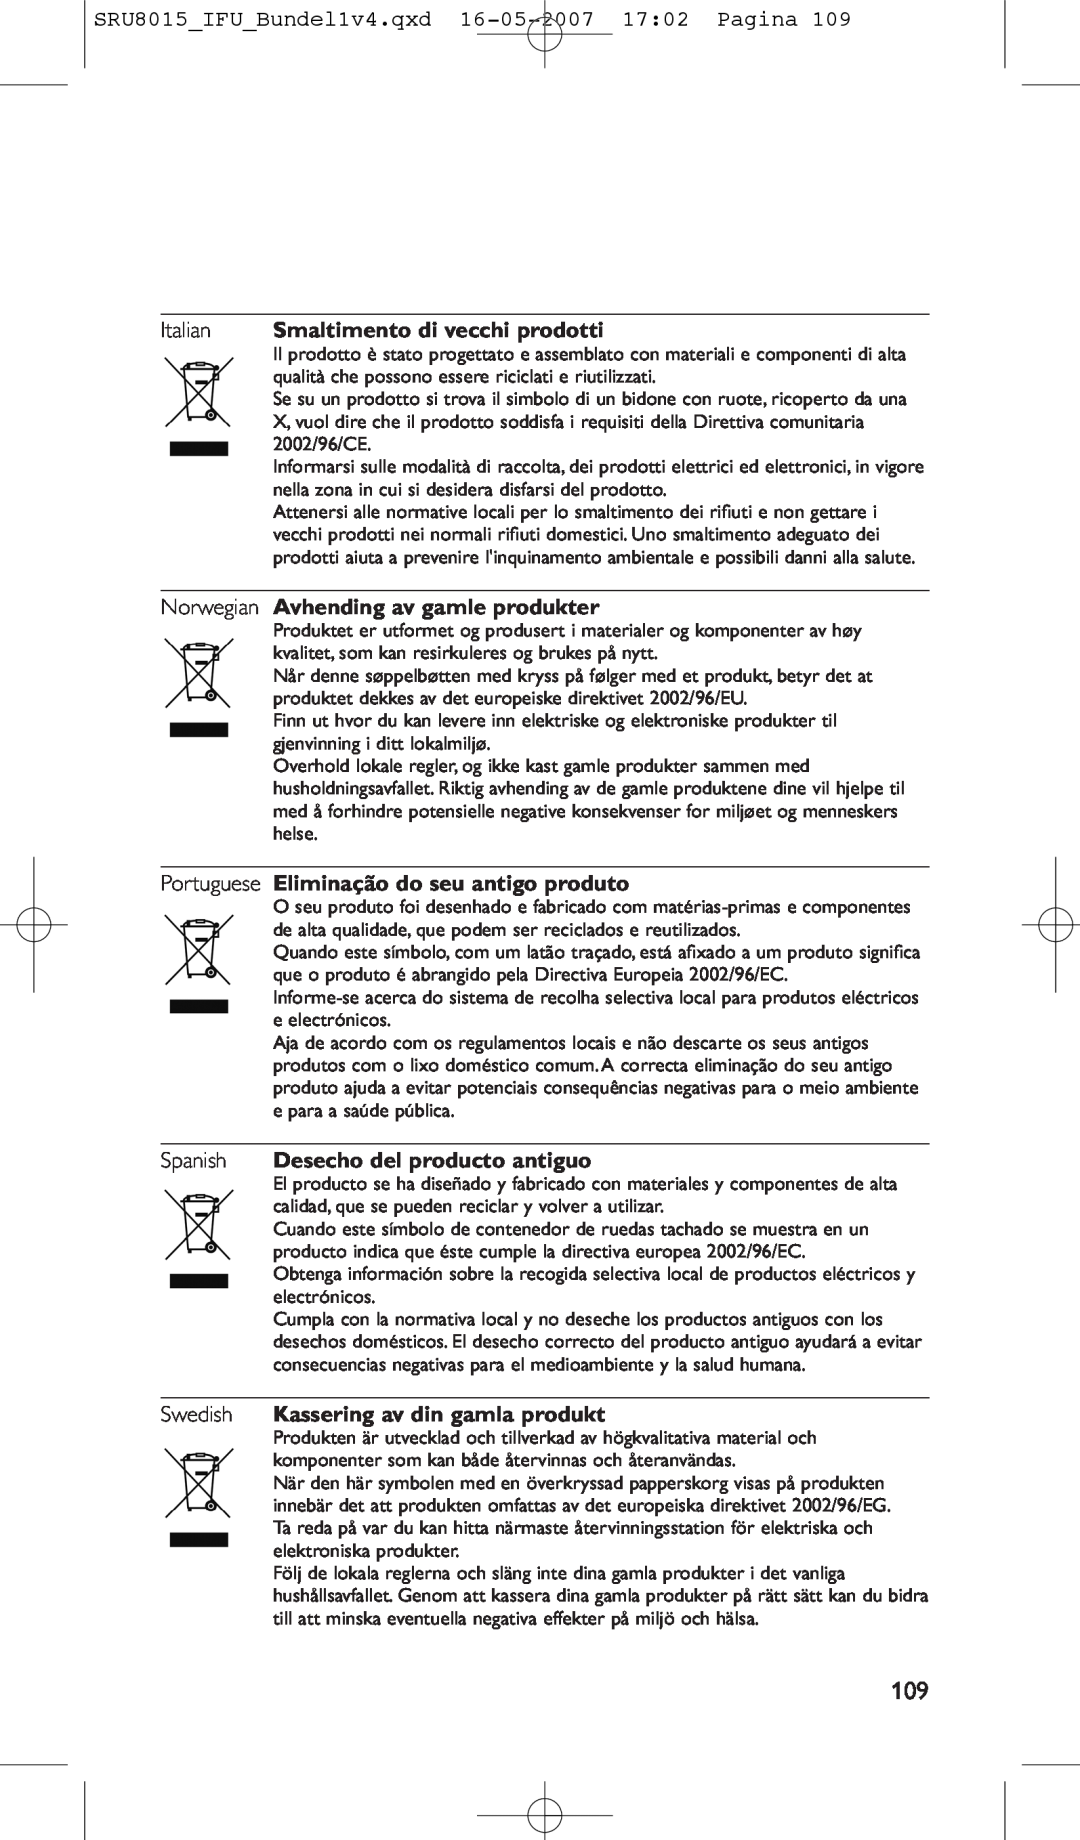 Philips manual SRU8015IFUBundel1v4.qxd 16-05-2007 1702 Pagina, Italian Smaltimento di vecchi prodotti 